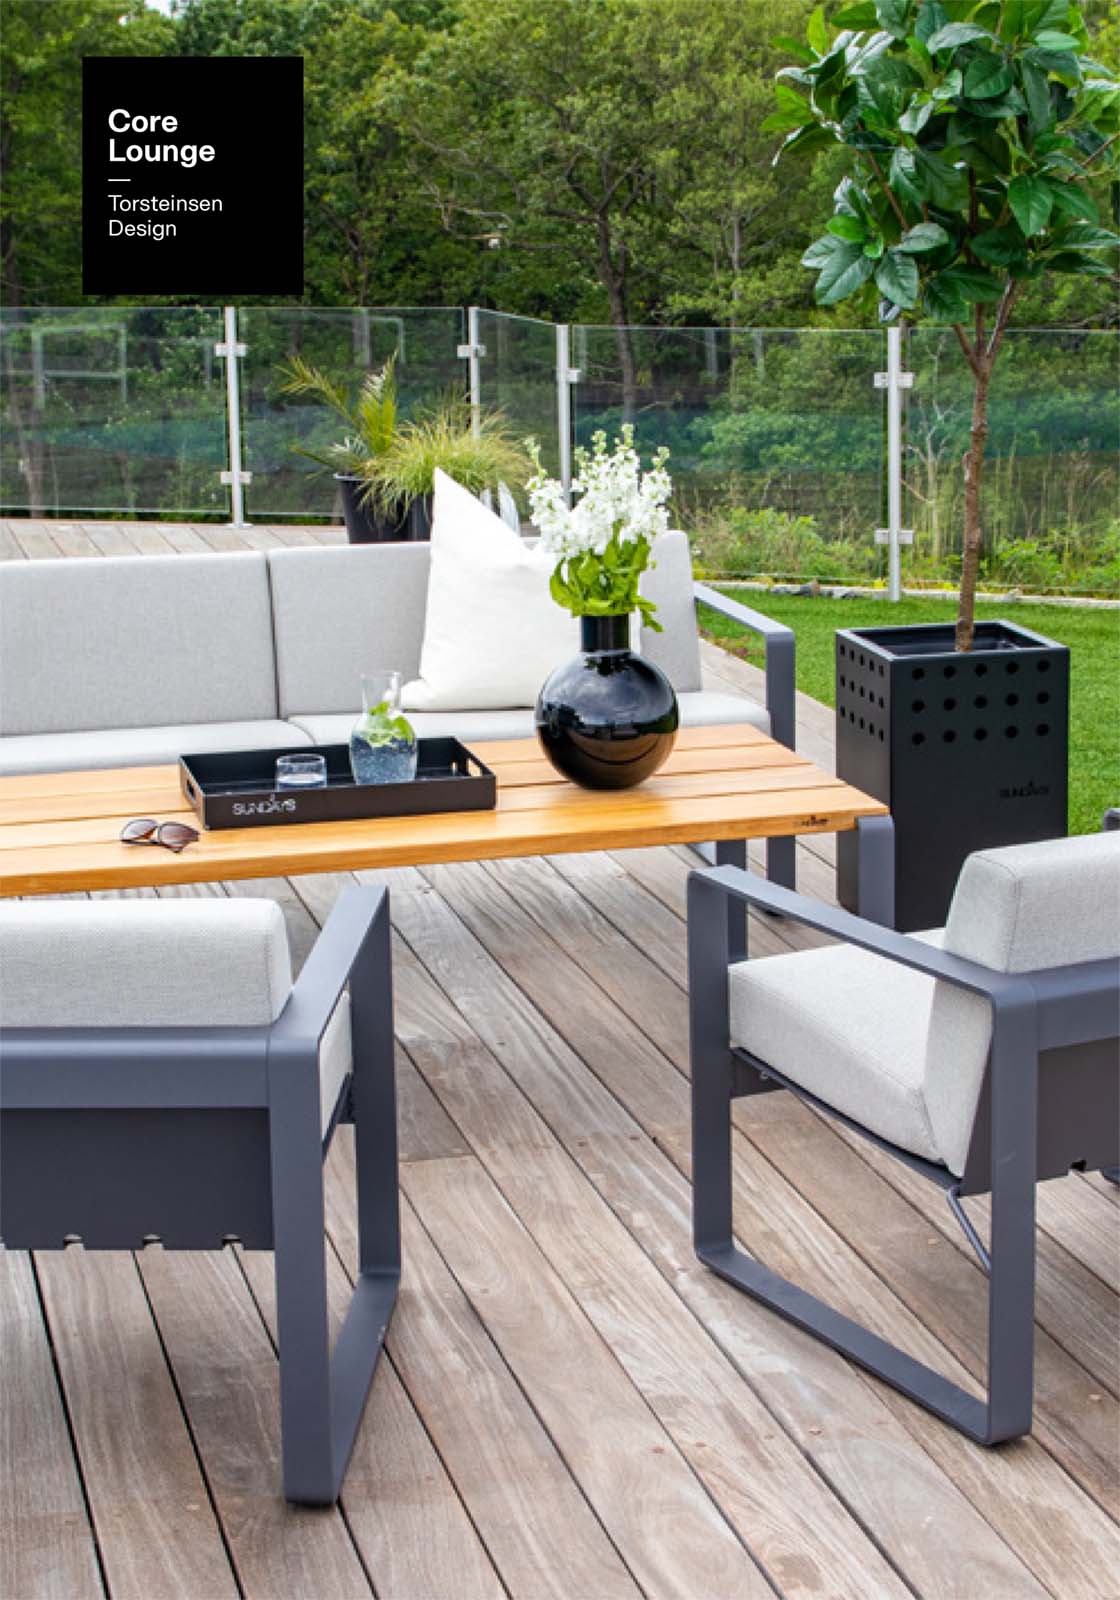 Sundays Design Core lounge hagesofa og stoler på terrasse i hage